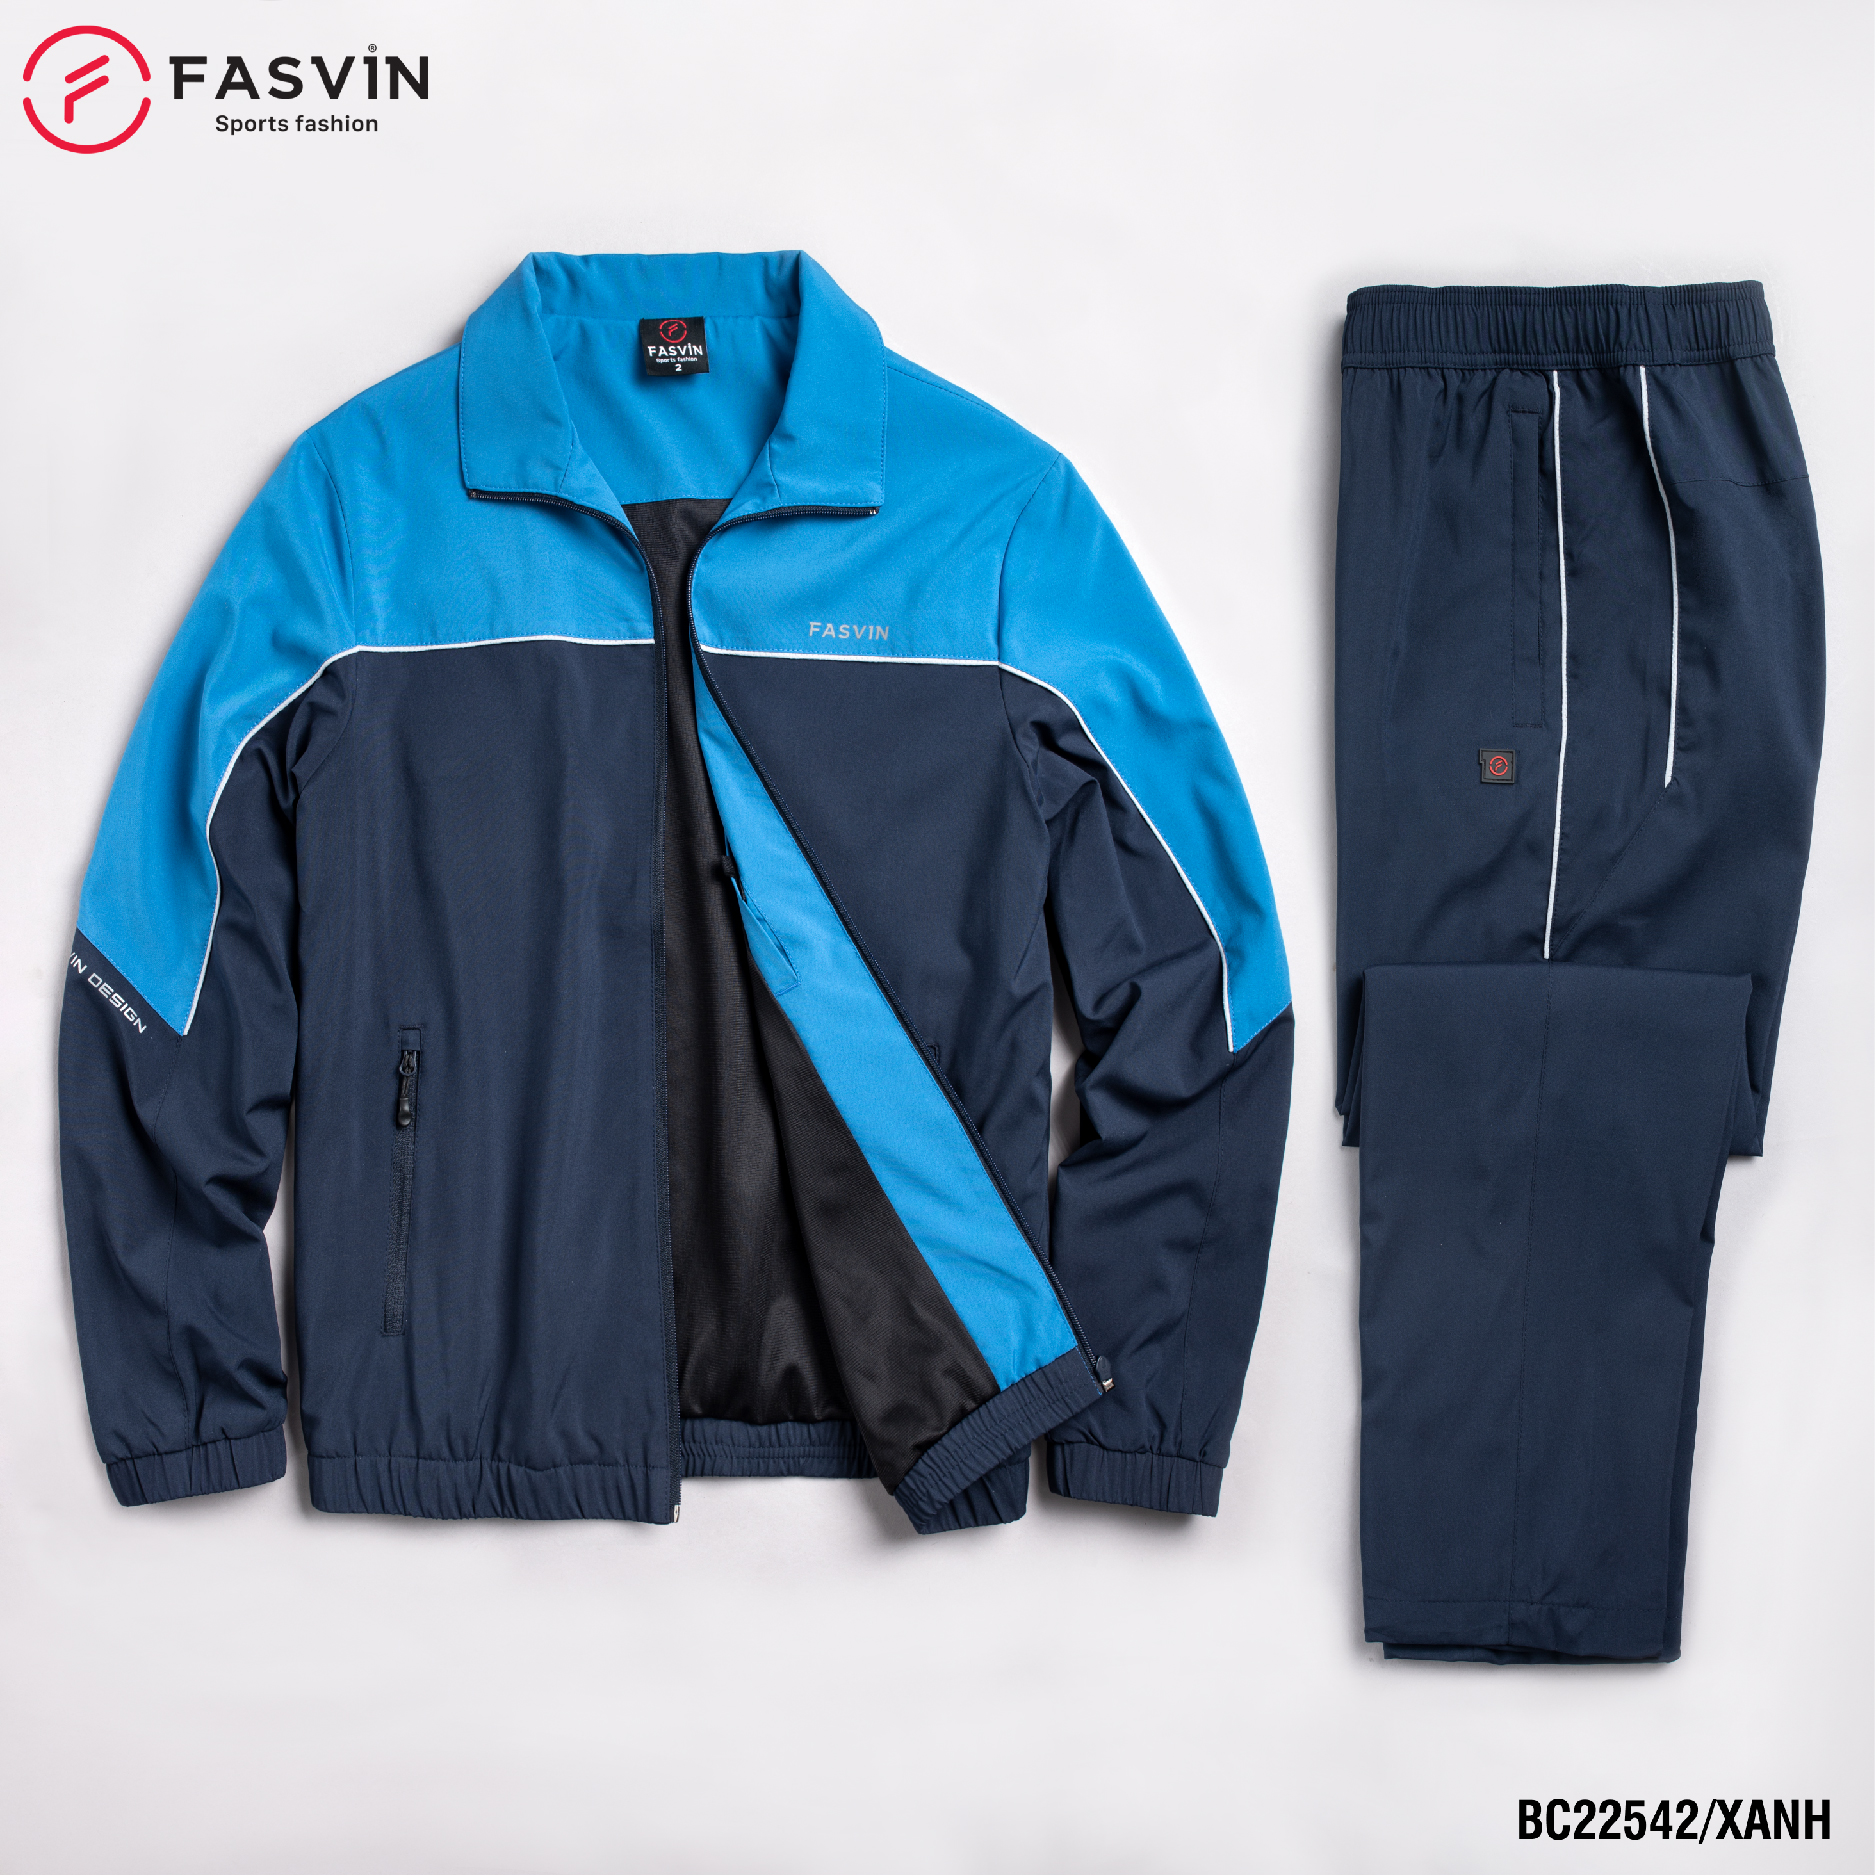 Bộ quần áo gió nam 2 lớp FASVIN BC22542.HN vải thể thao cao cấp lót lưới hàng chính hãng